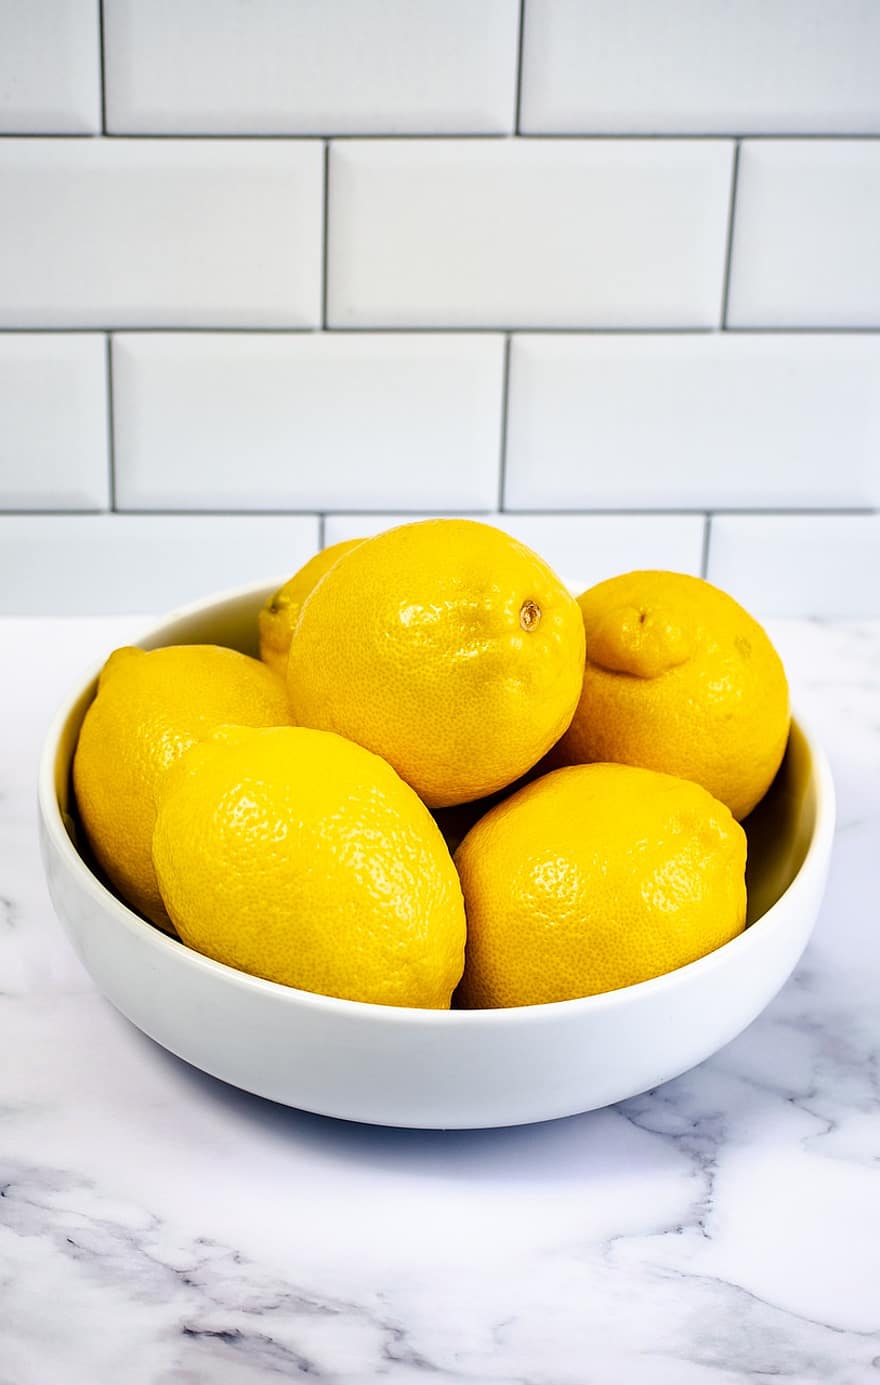 лимоны, фрукты, миска, питание, цитрусовые, желтые фрукты, органический, производить, крупный план